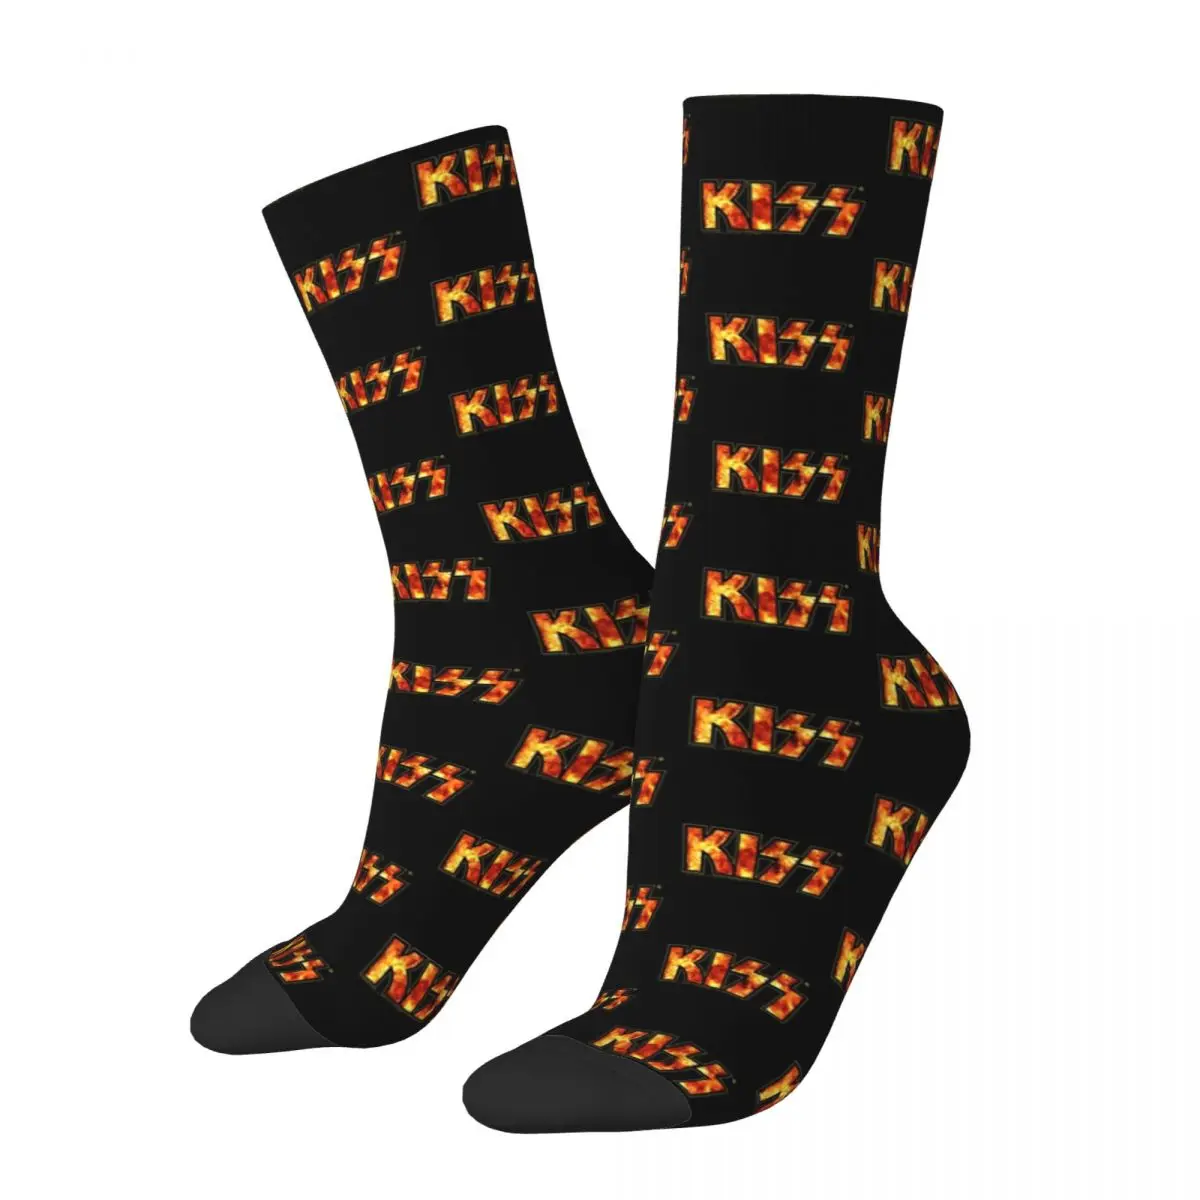 

Повседневные носки для скейтборда с логотипом Kiss Band Fire, носки из полиэстера для скейтборда, дышащие носки унисекс